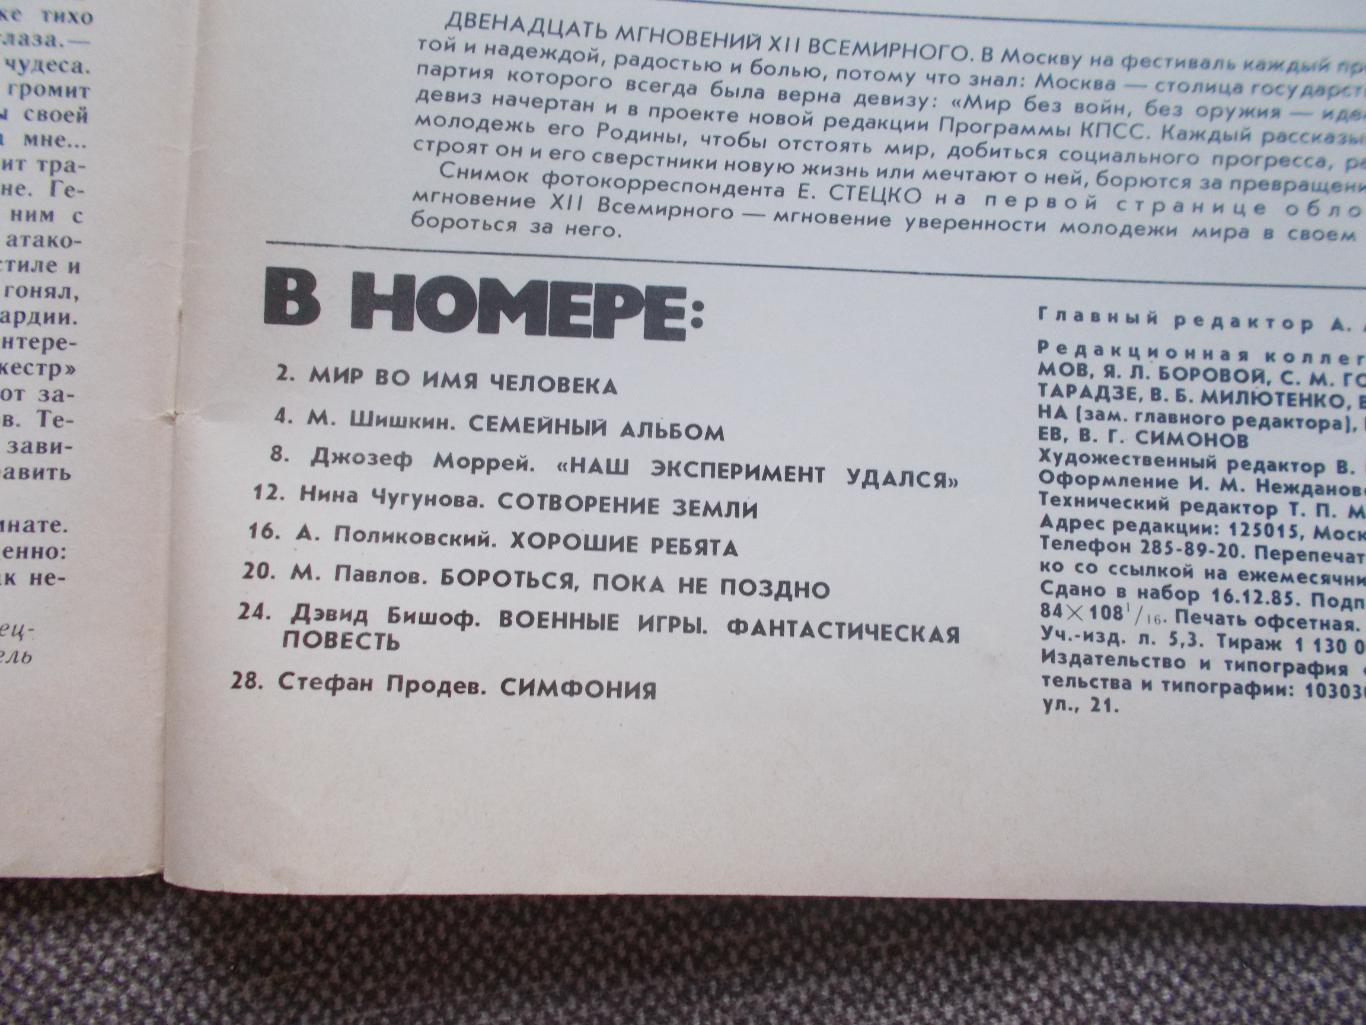 Журнал СССР :Ровесник№ 2 (февраль) 1986 г. (Молодежный музыкальный журнал) 2